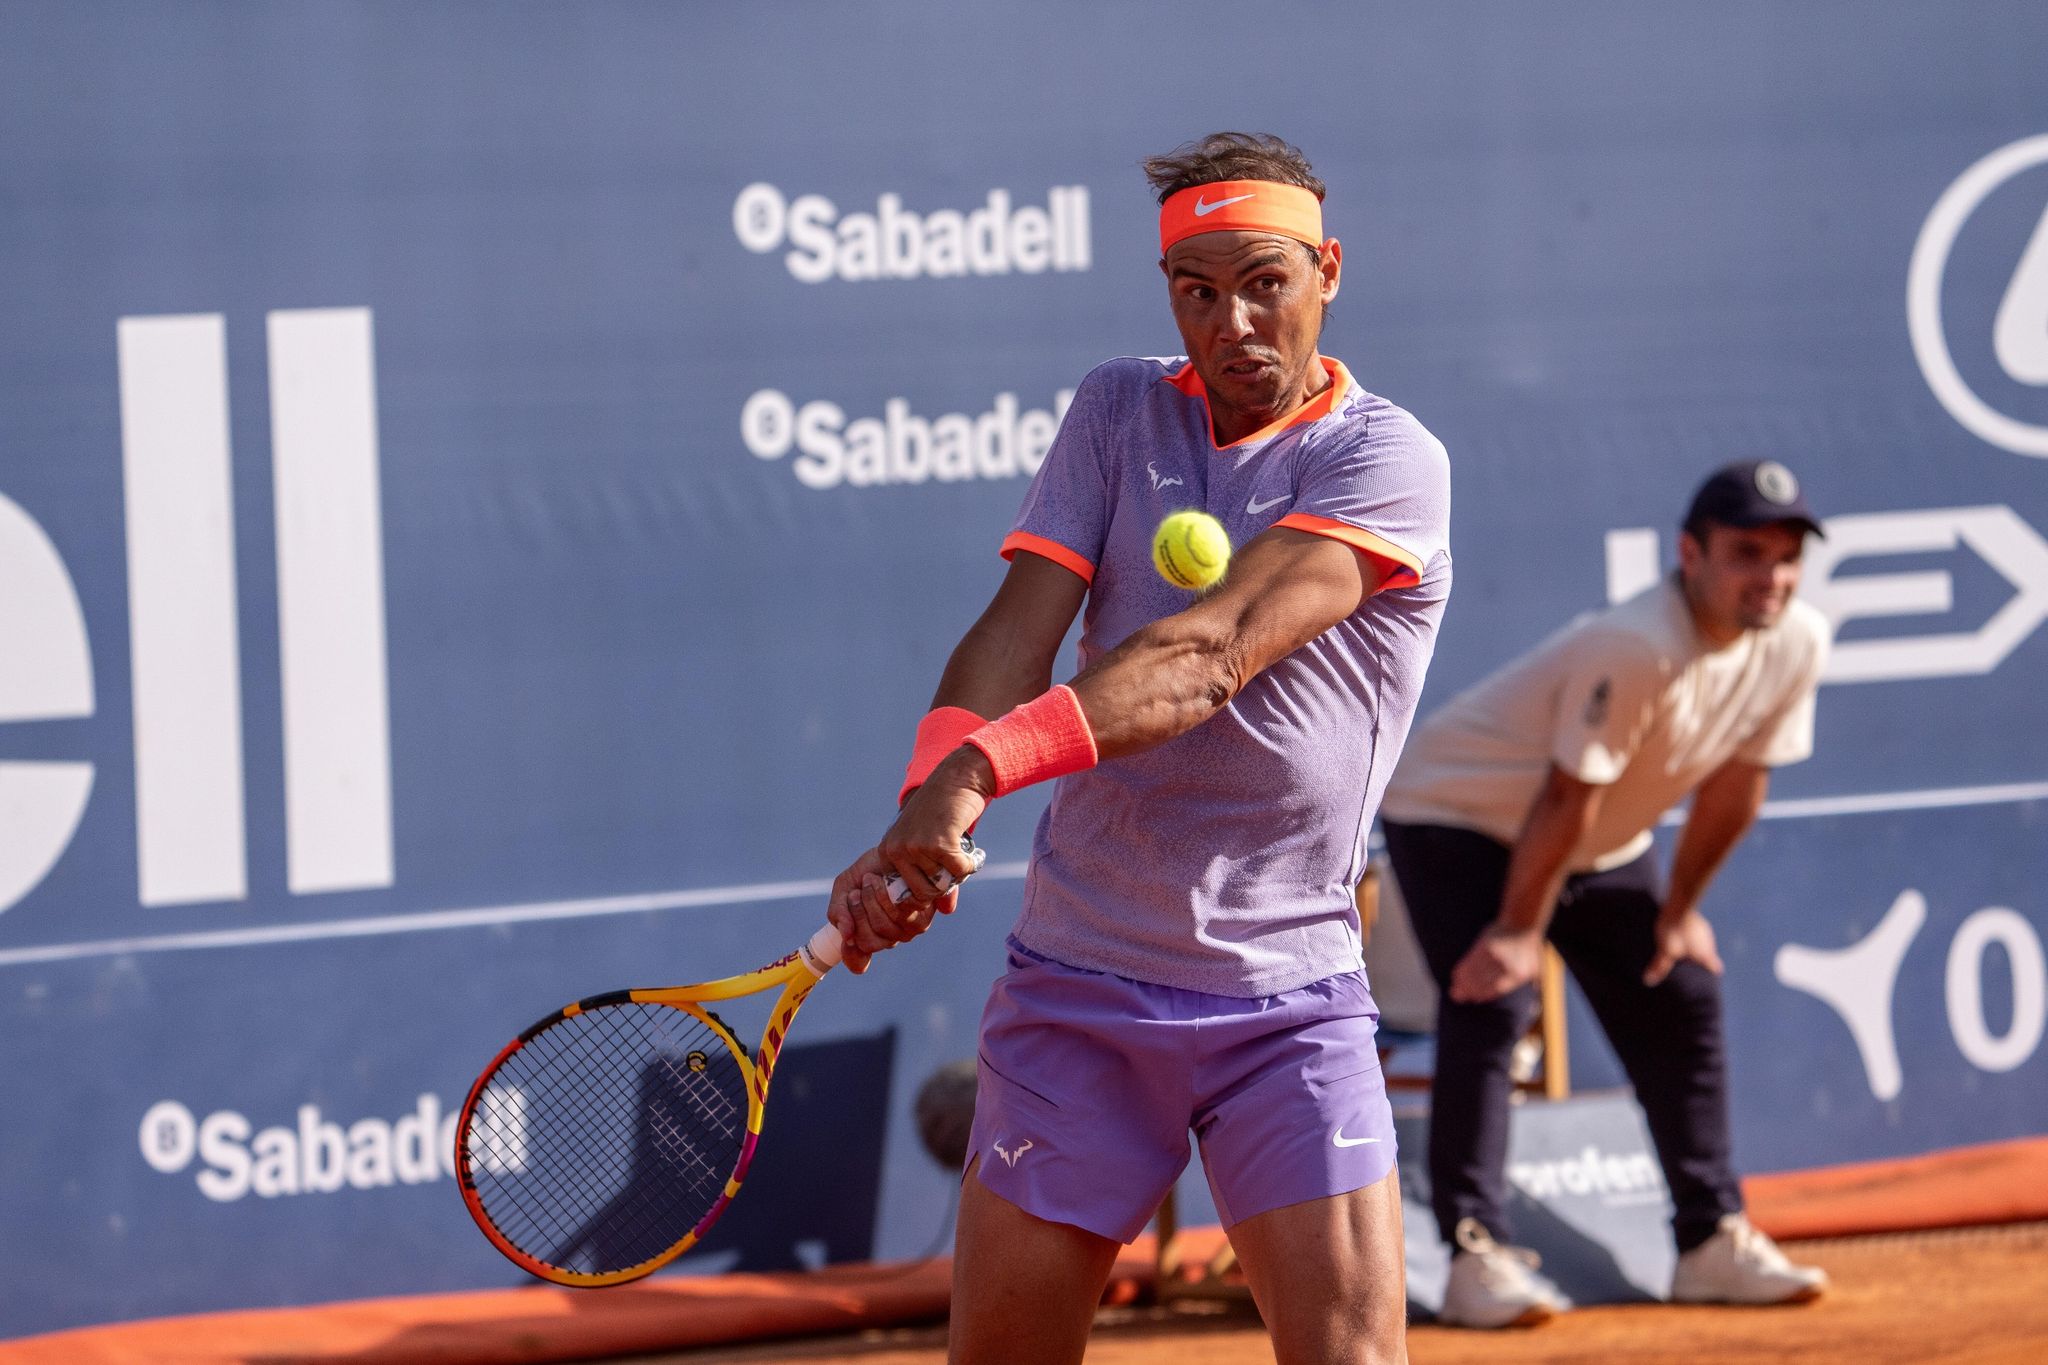 Nadal’s short comeback in Barcelona